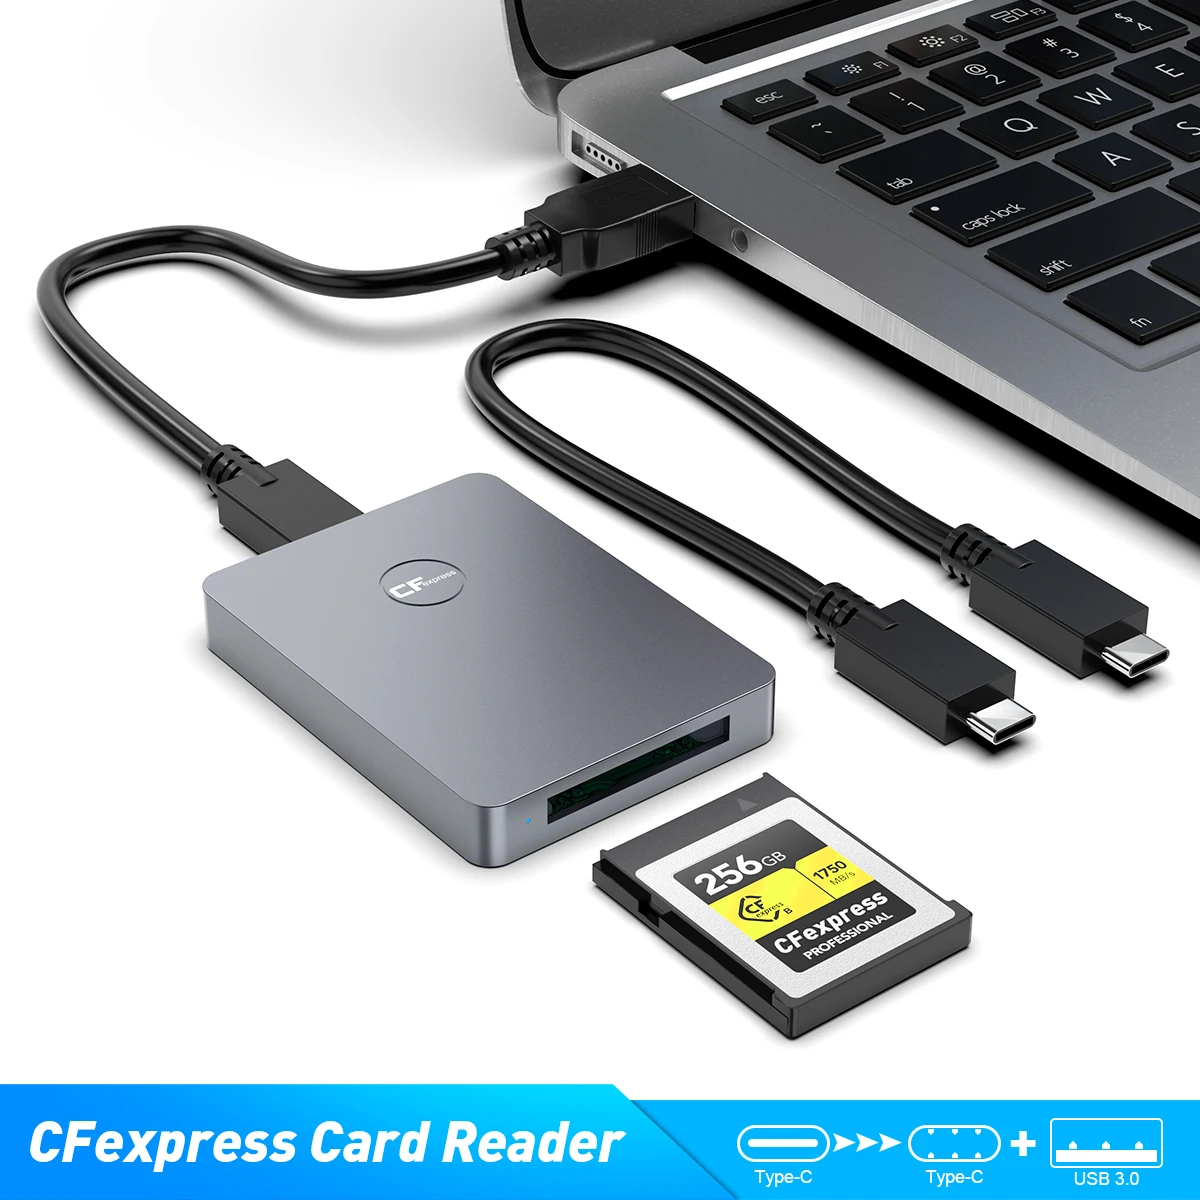 con cables USB C a C y C a A adaptador de tarjeta USB C 3.1 Gen 2 a CFexpress tipo B de hasta 10 Gbps Alxum Lector de tarjetas CFexpress compatible con Android / Windows / Mac OS / Linux 